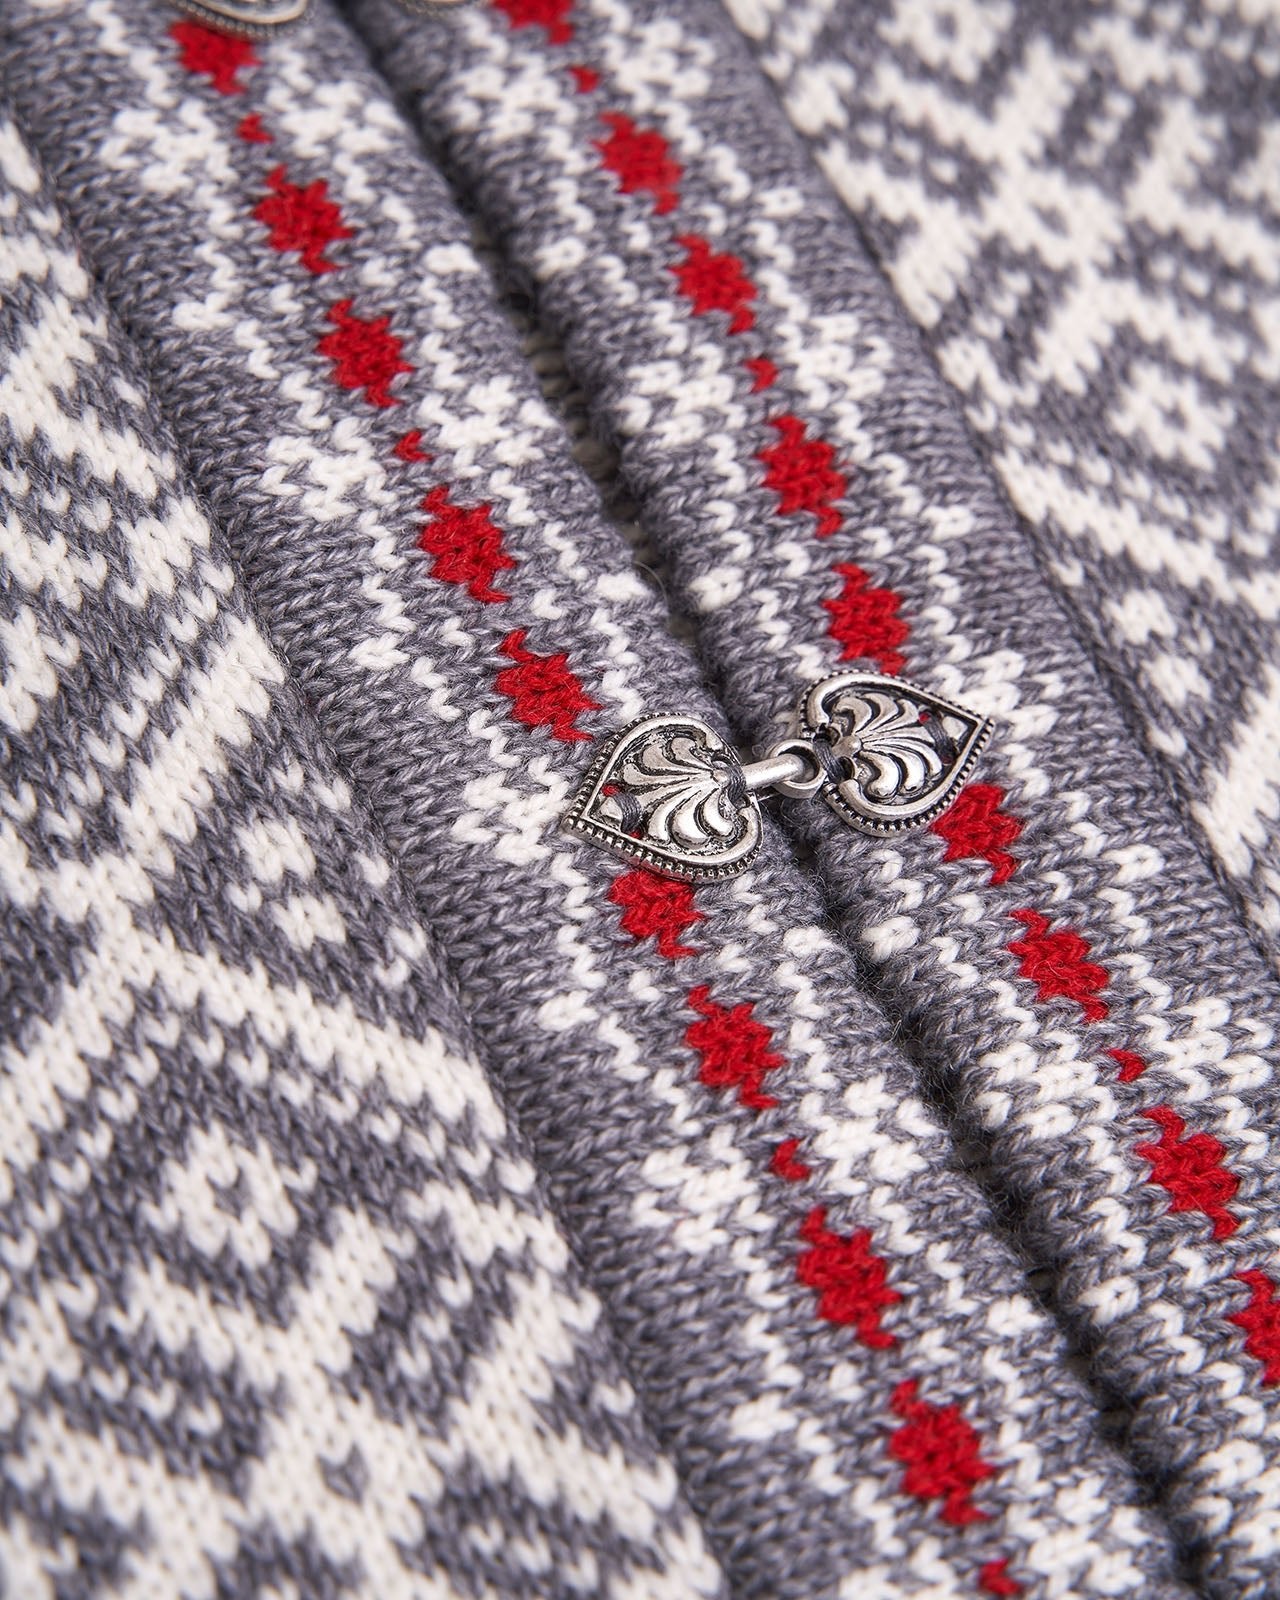 Metal buckle on wool pattern cardigan